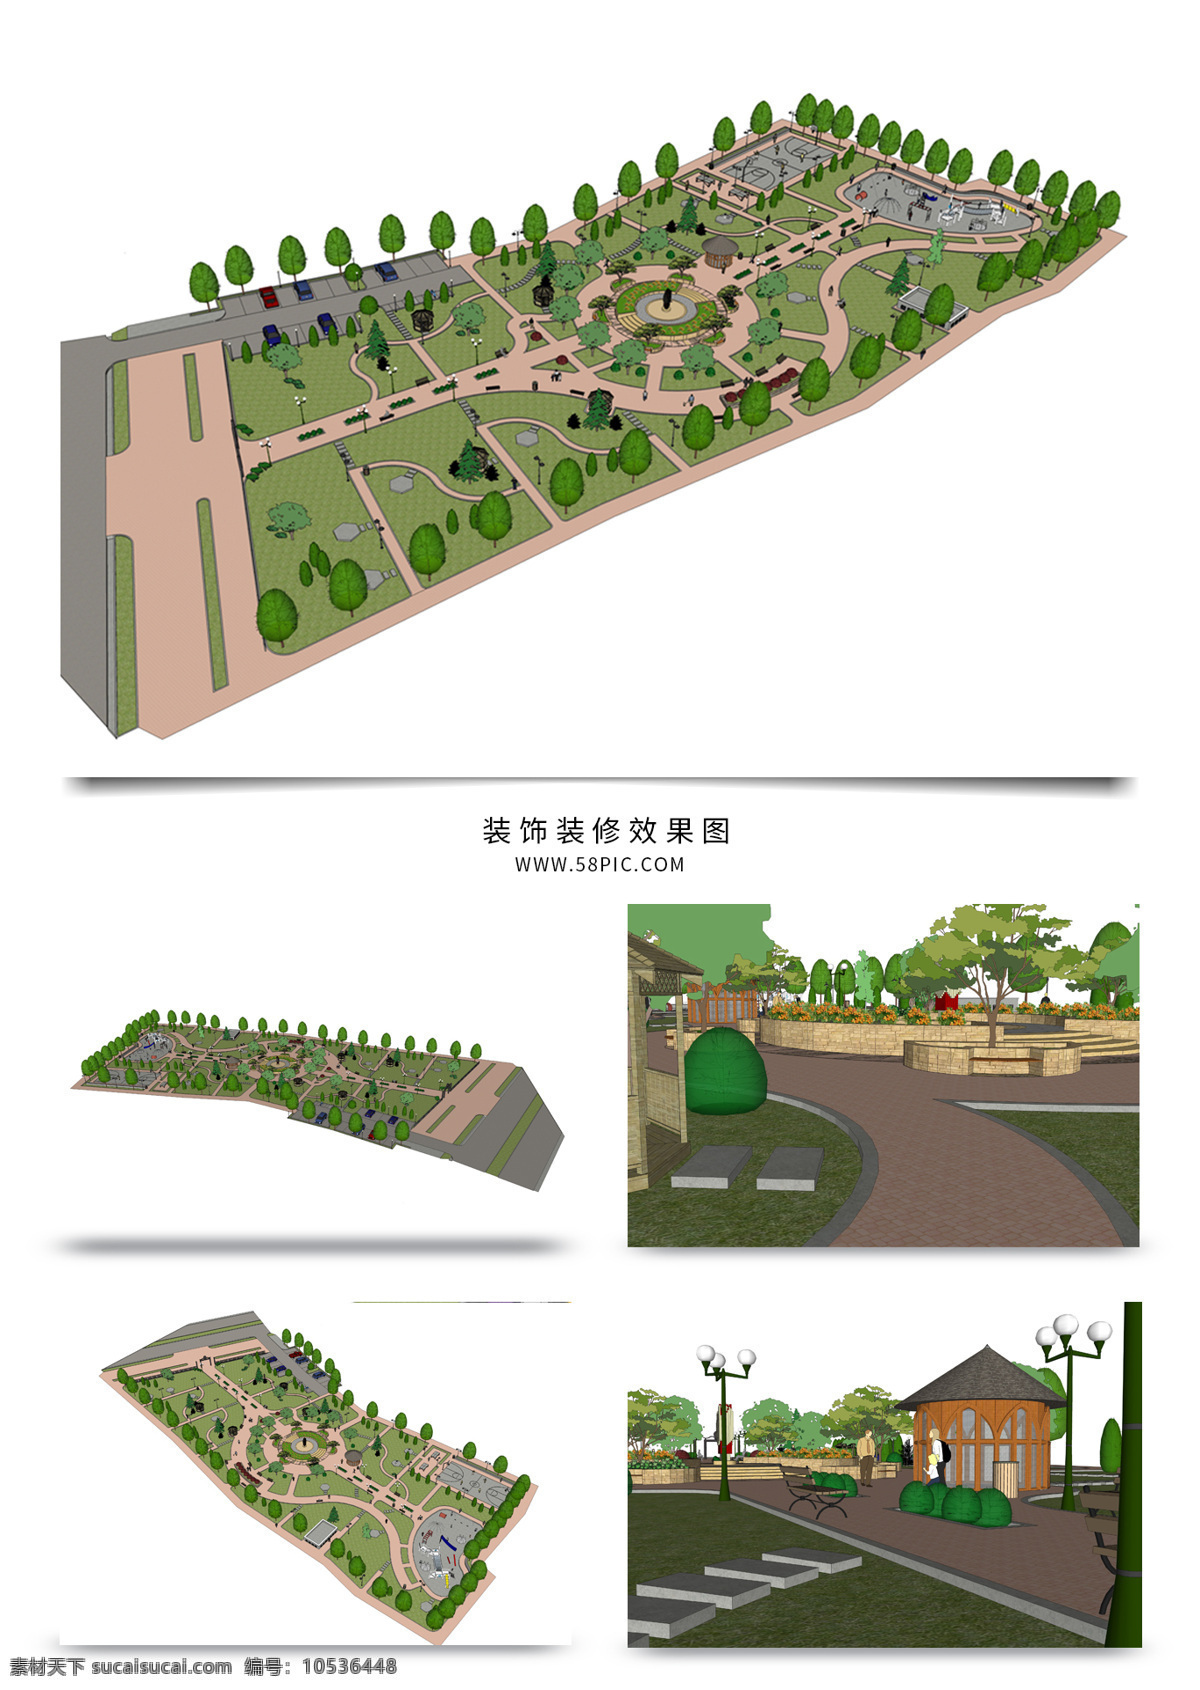 公园 景观 规划 su 模型 园林 sketchup 草图 大师 景观规划 建筑装饰 设计素材 公园景观规划